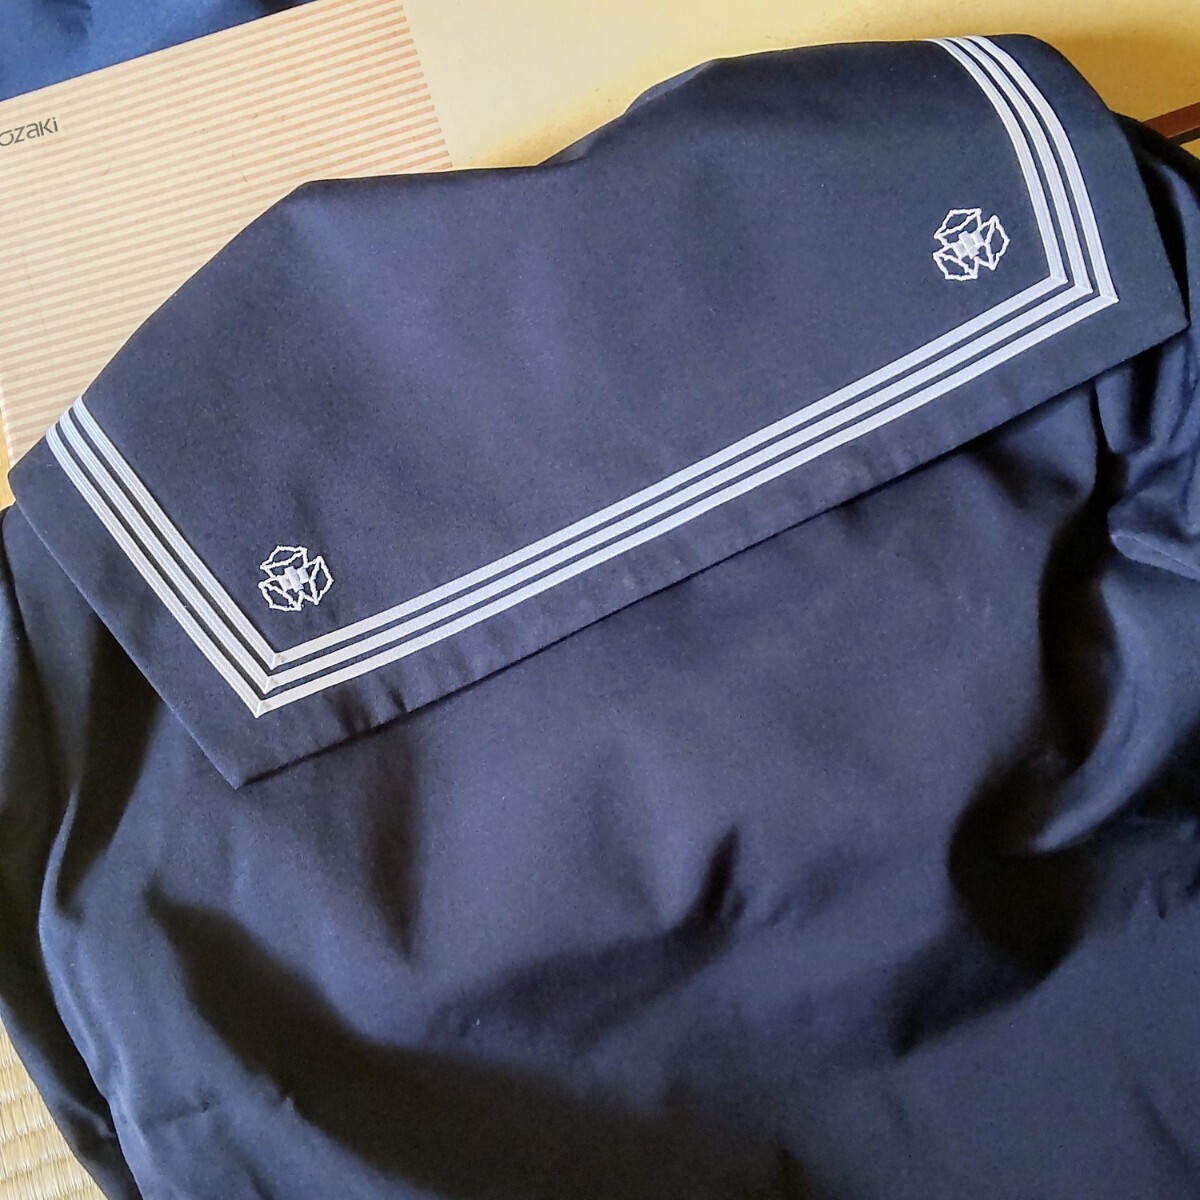  не использовался 1 иен матроска шарф верхняя одежда большой размер 180A зима предмет 3шт.@ линия женщина школьная форма Iwate префектура . иметь . неполная средняя школа темно-синий форма 